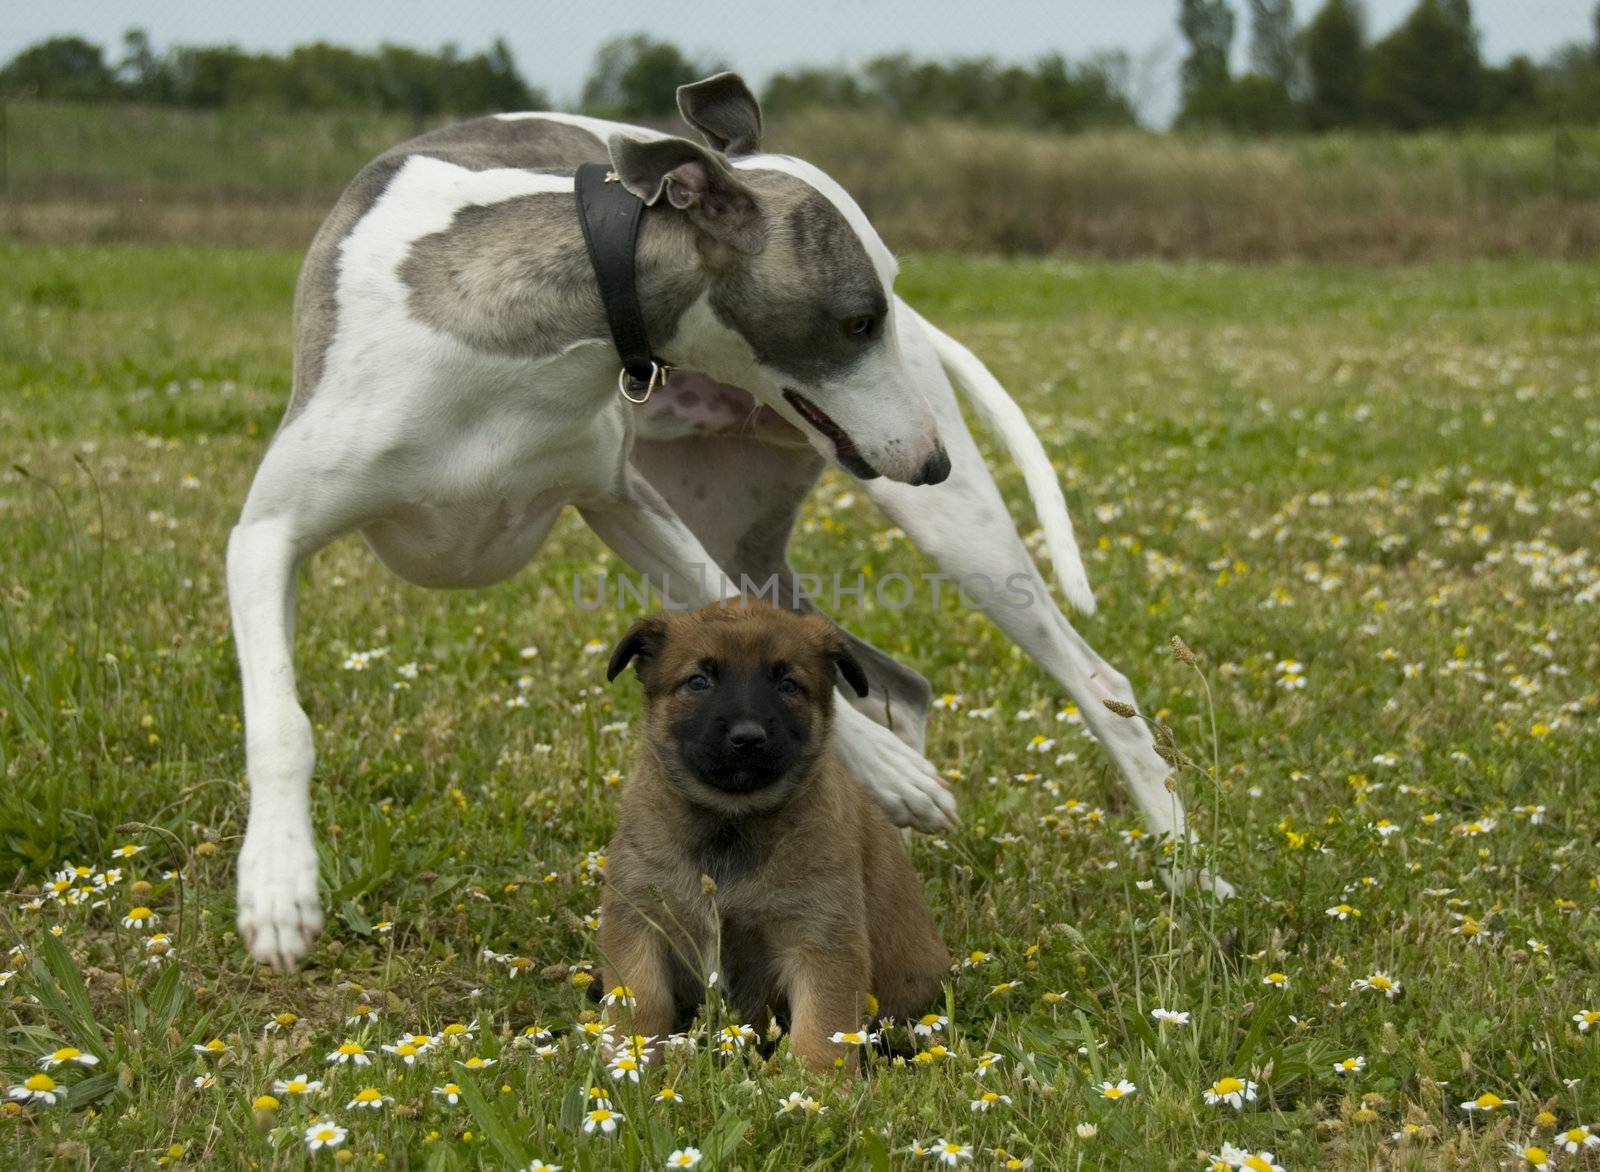 greyhound and puppy shepherd by cynoclub